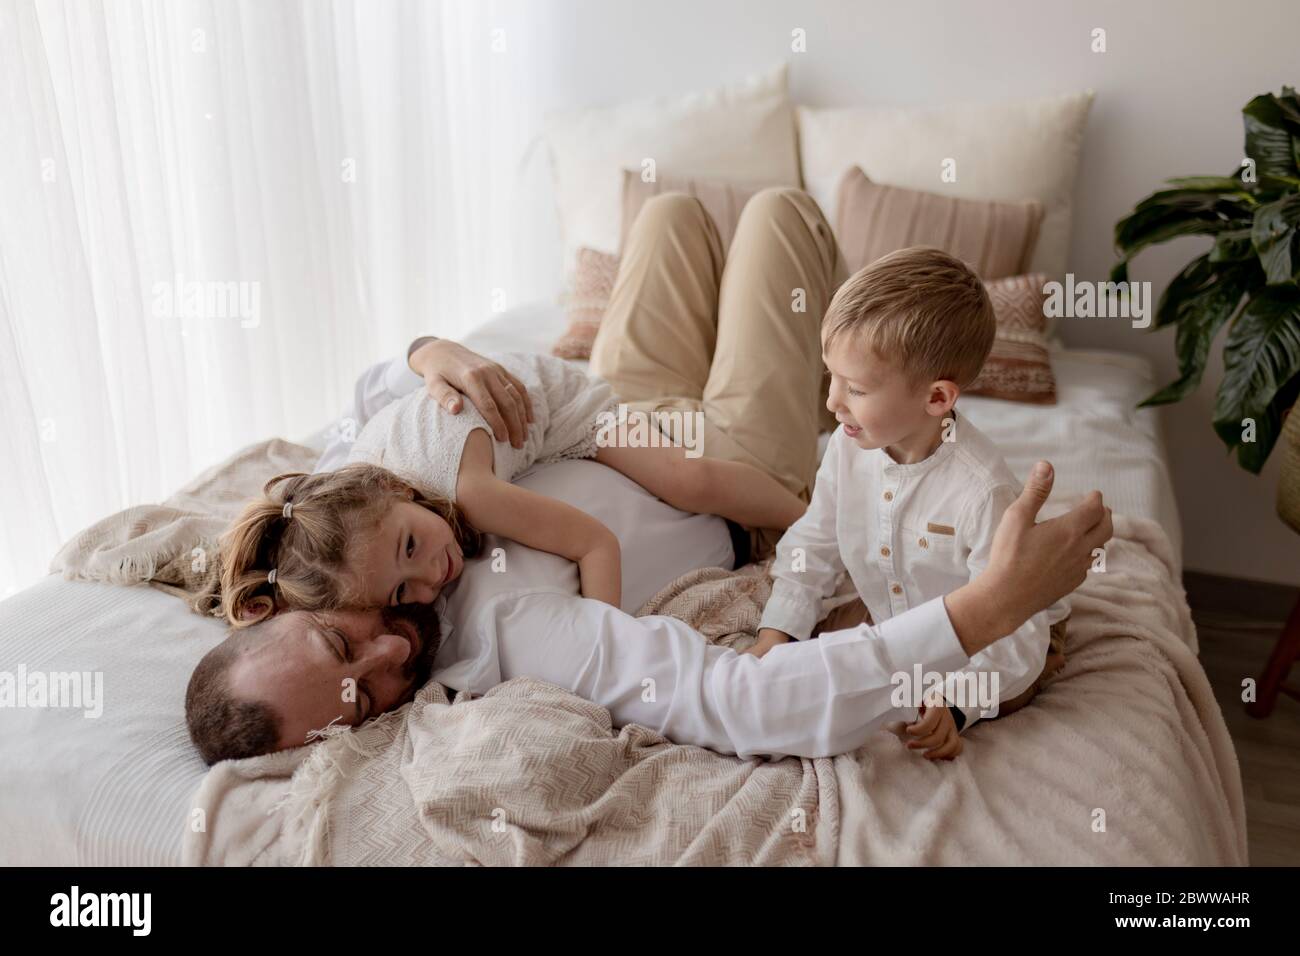 Vater liegt auf dem Bett und kuschelt mit seinen beiden Kindern Stockfoto